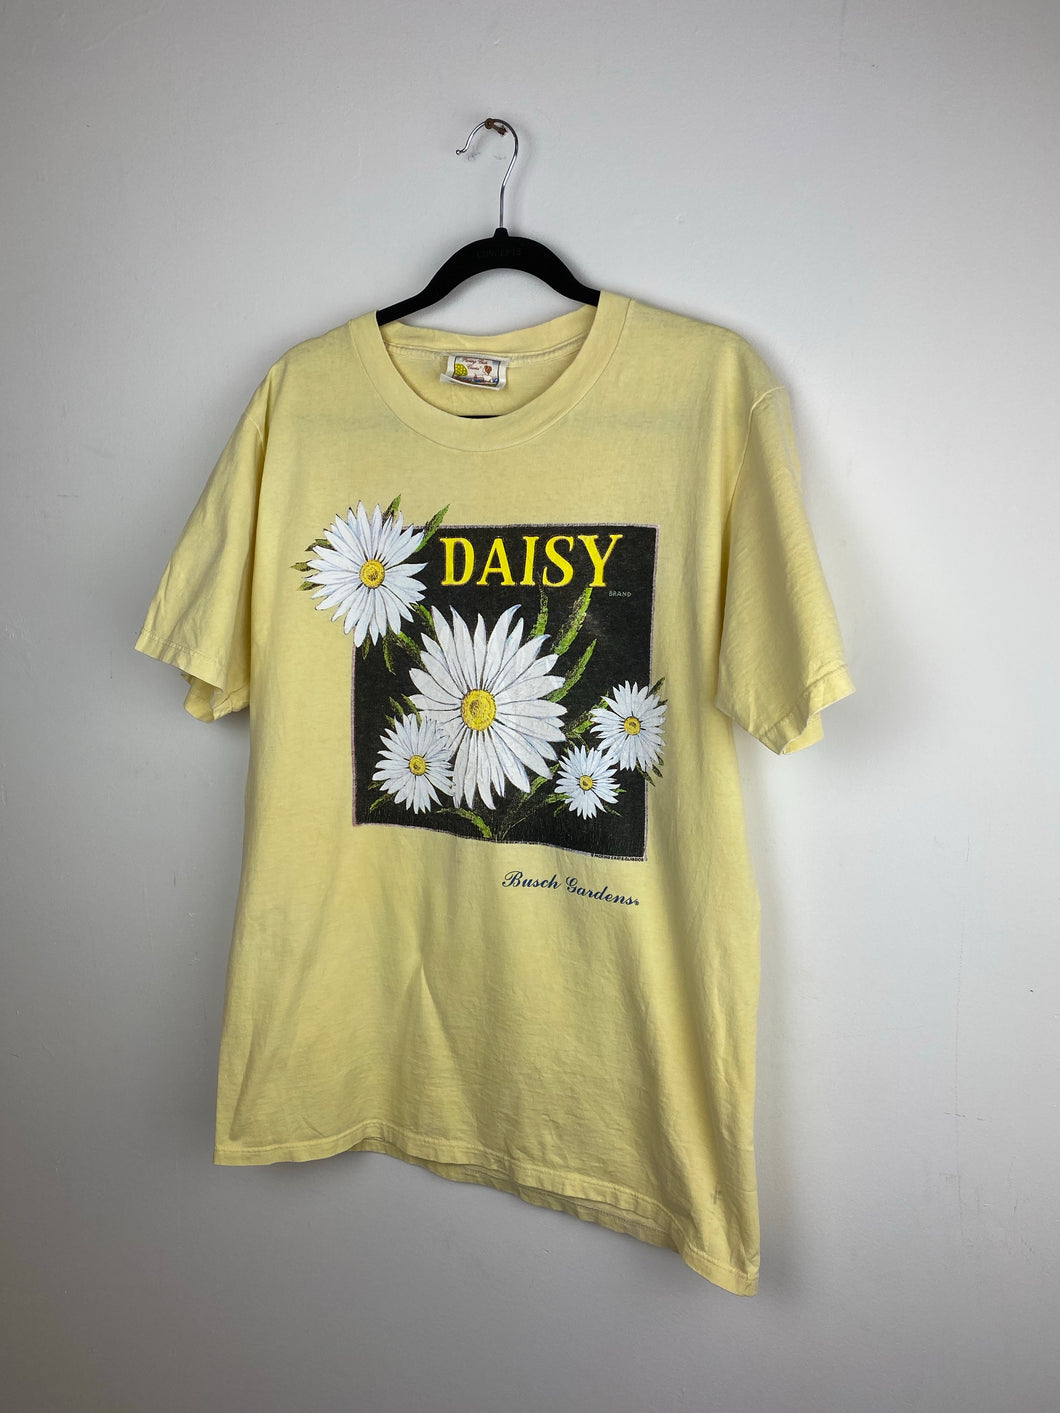 90s Daisy t shirt